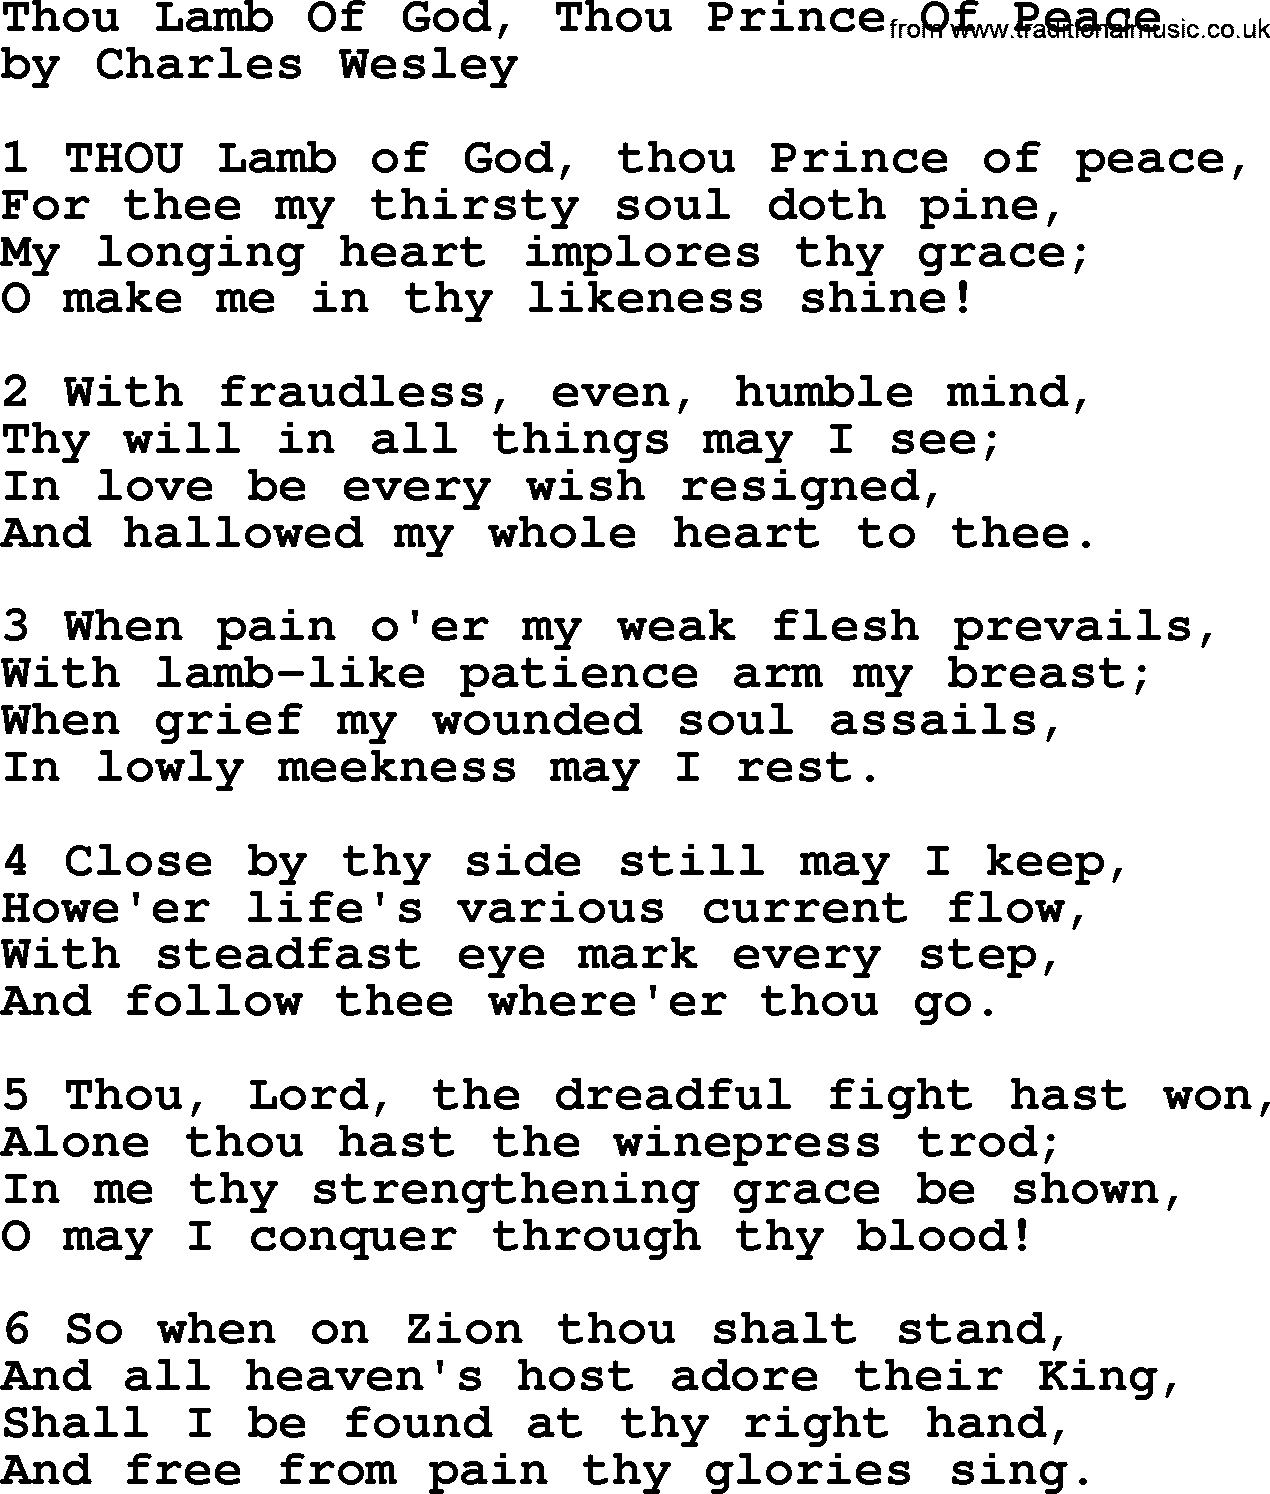 Charles Wesley hymn: Thou Lamb Of God, Thou Prince Of Peace, lyrics